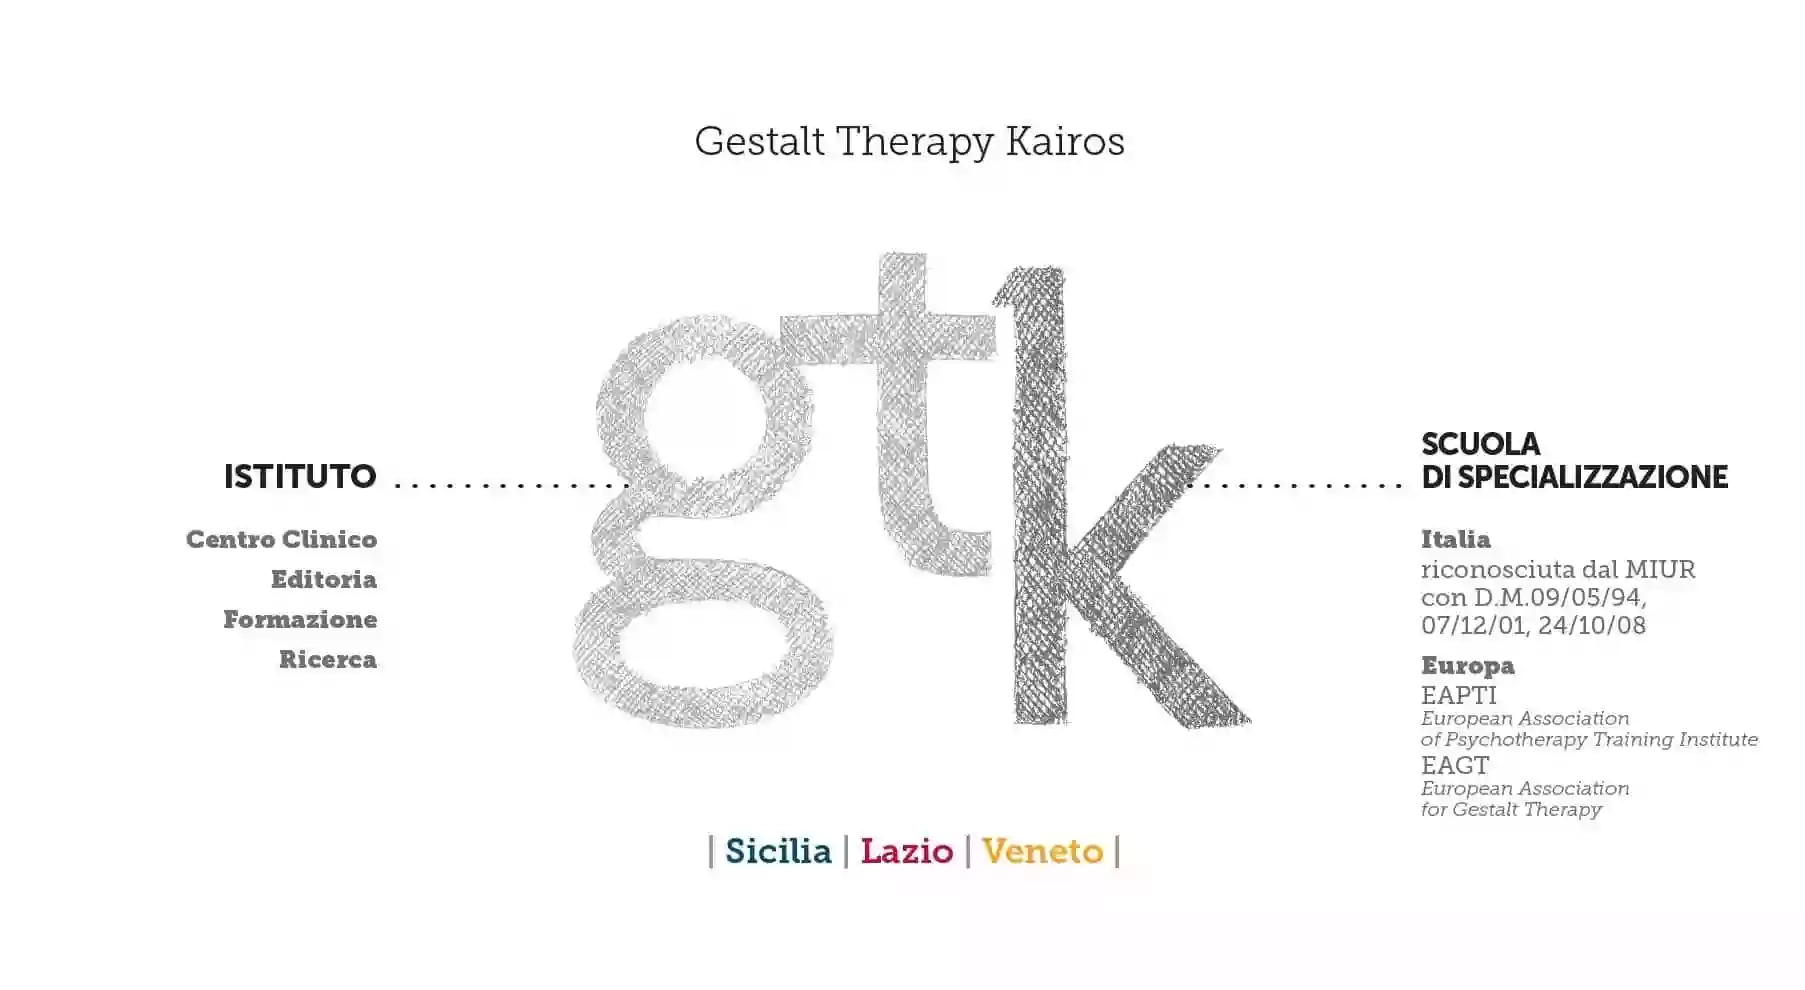 Istituto di Gestalt Therapy Kairos - Sede di Roma. Psicoterapia, formazione e ricerca